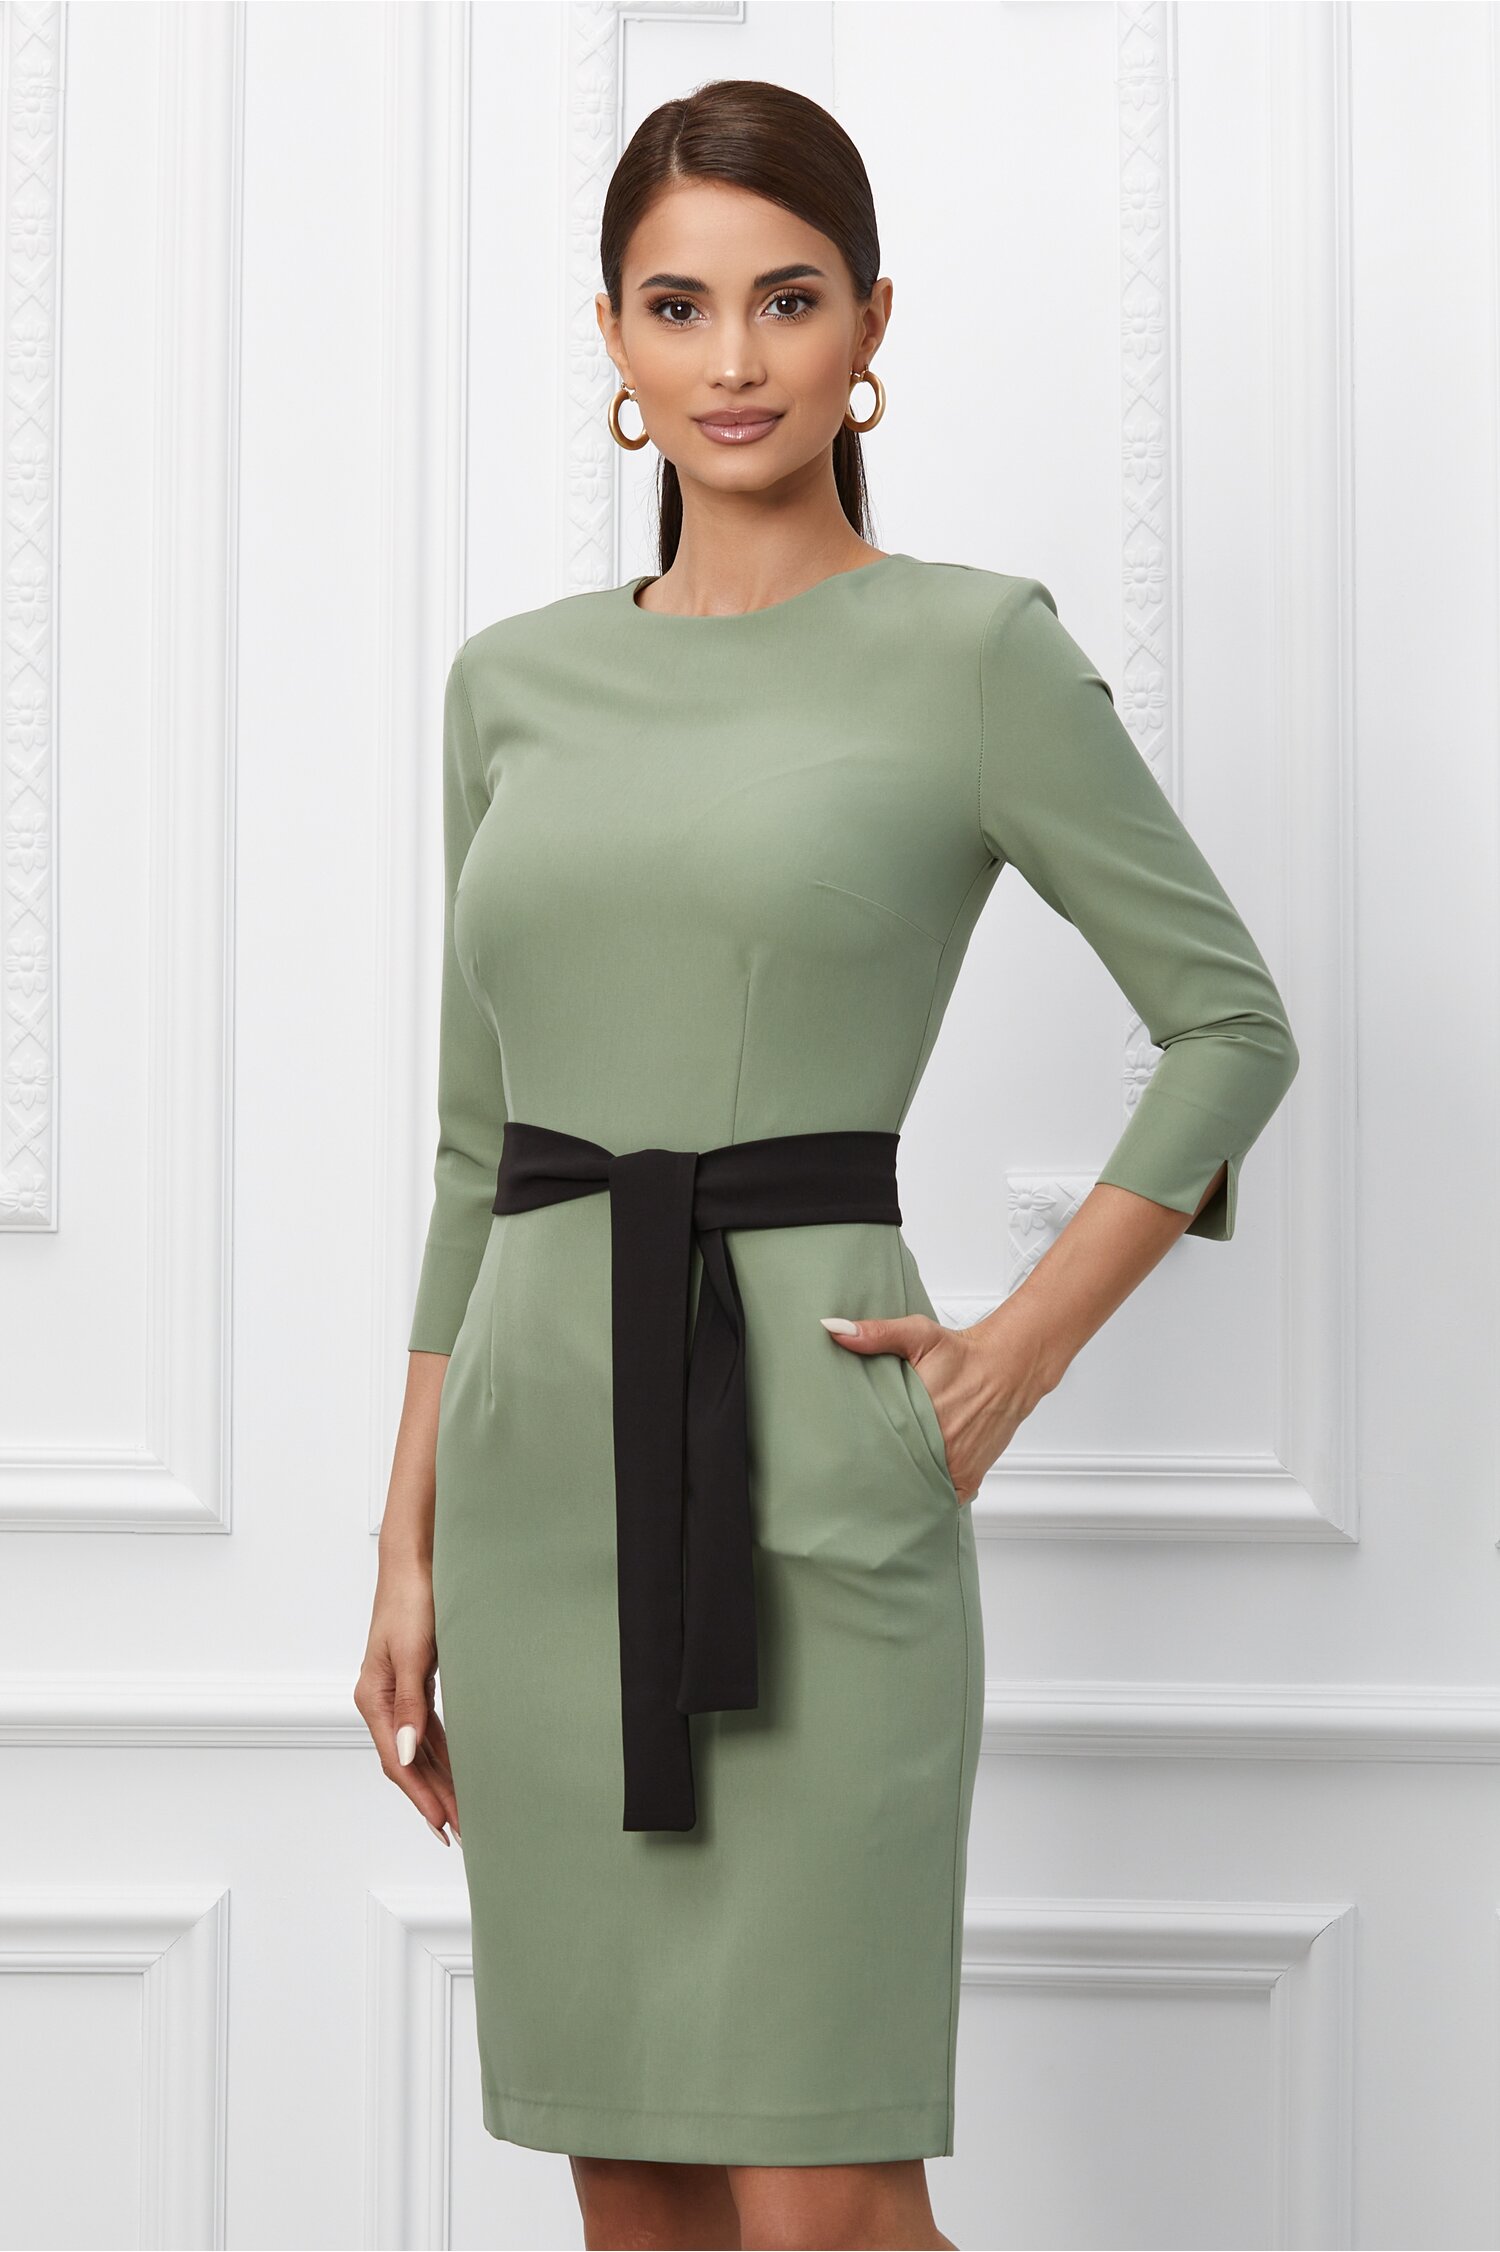 Rochie Dy Fashion verde cu cordon negru in talie 2022 ❤️ Pret Super dyfashion imagine noua 2022